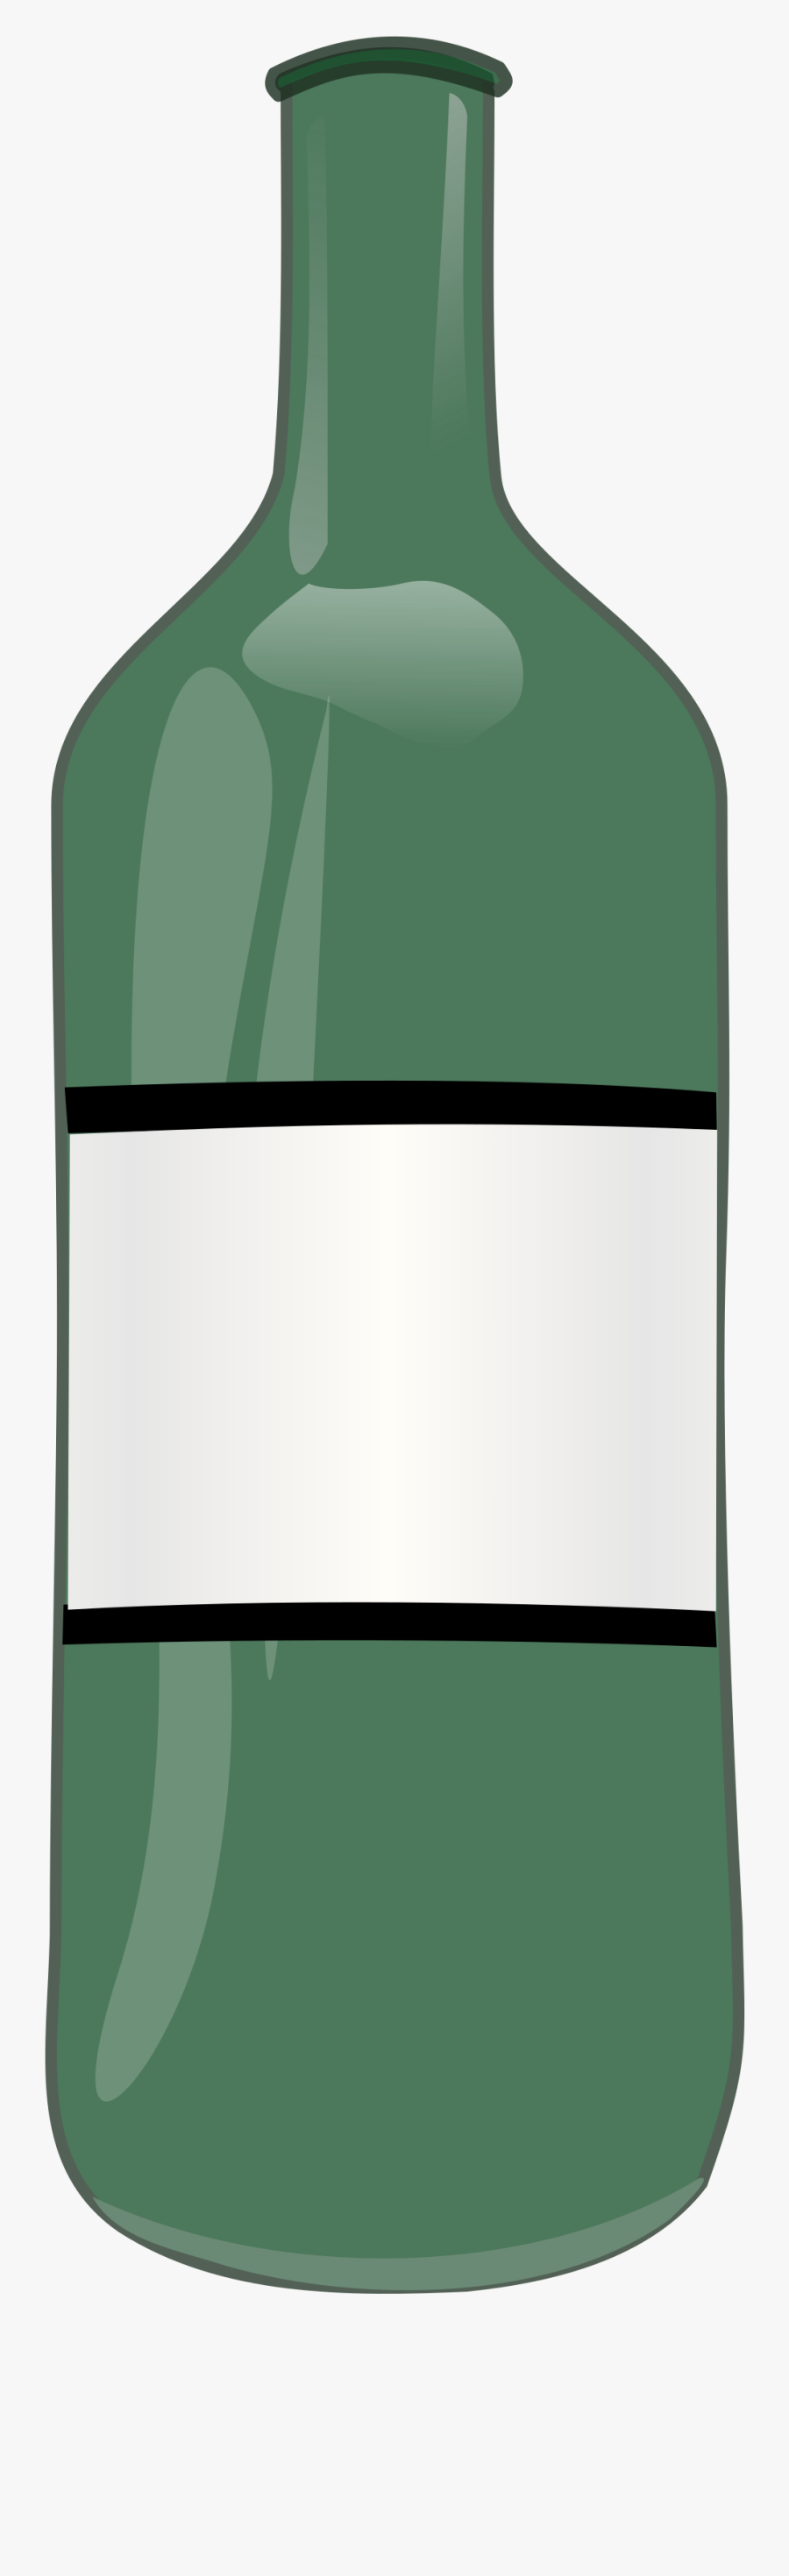 Alcohol Bottles Clipart - Bottle Clip Art, Transparent Clipart